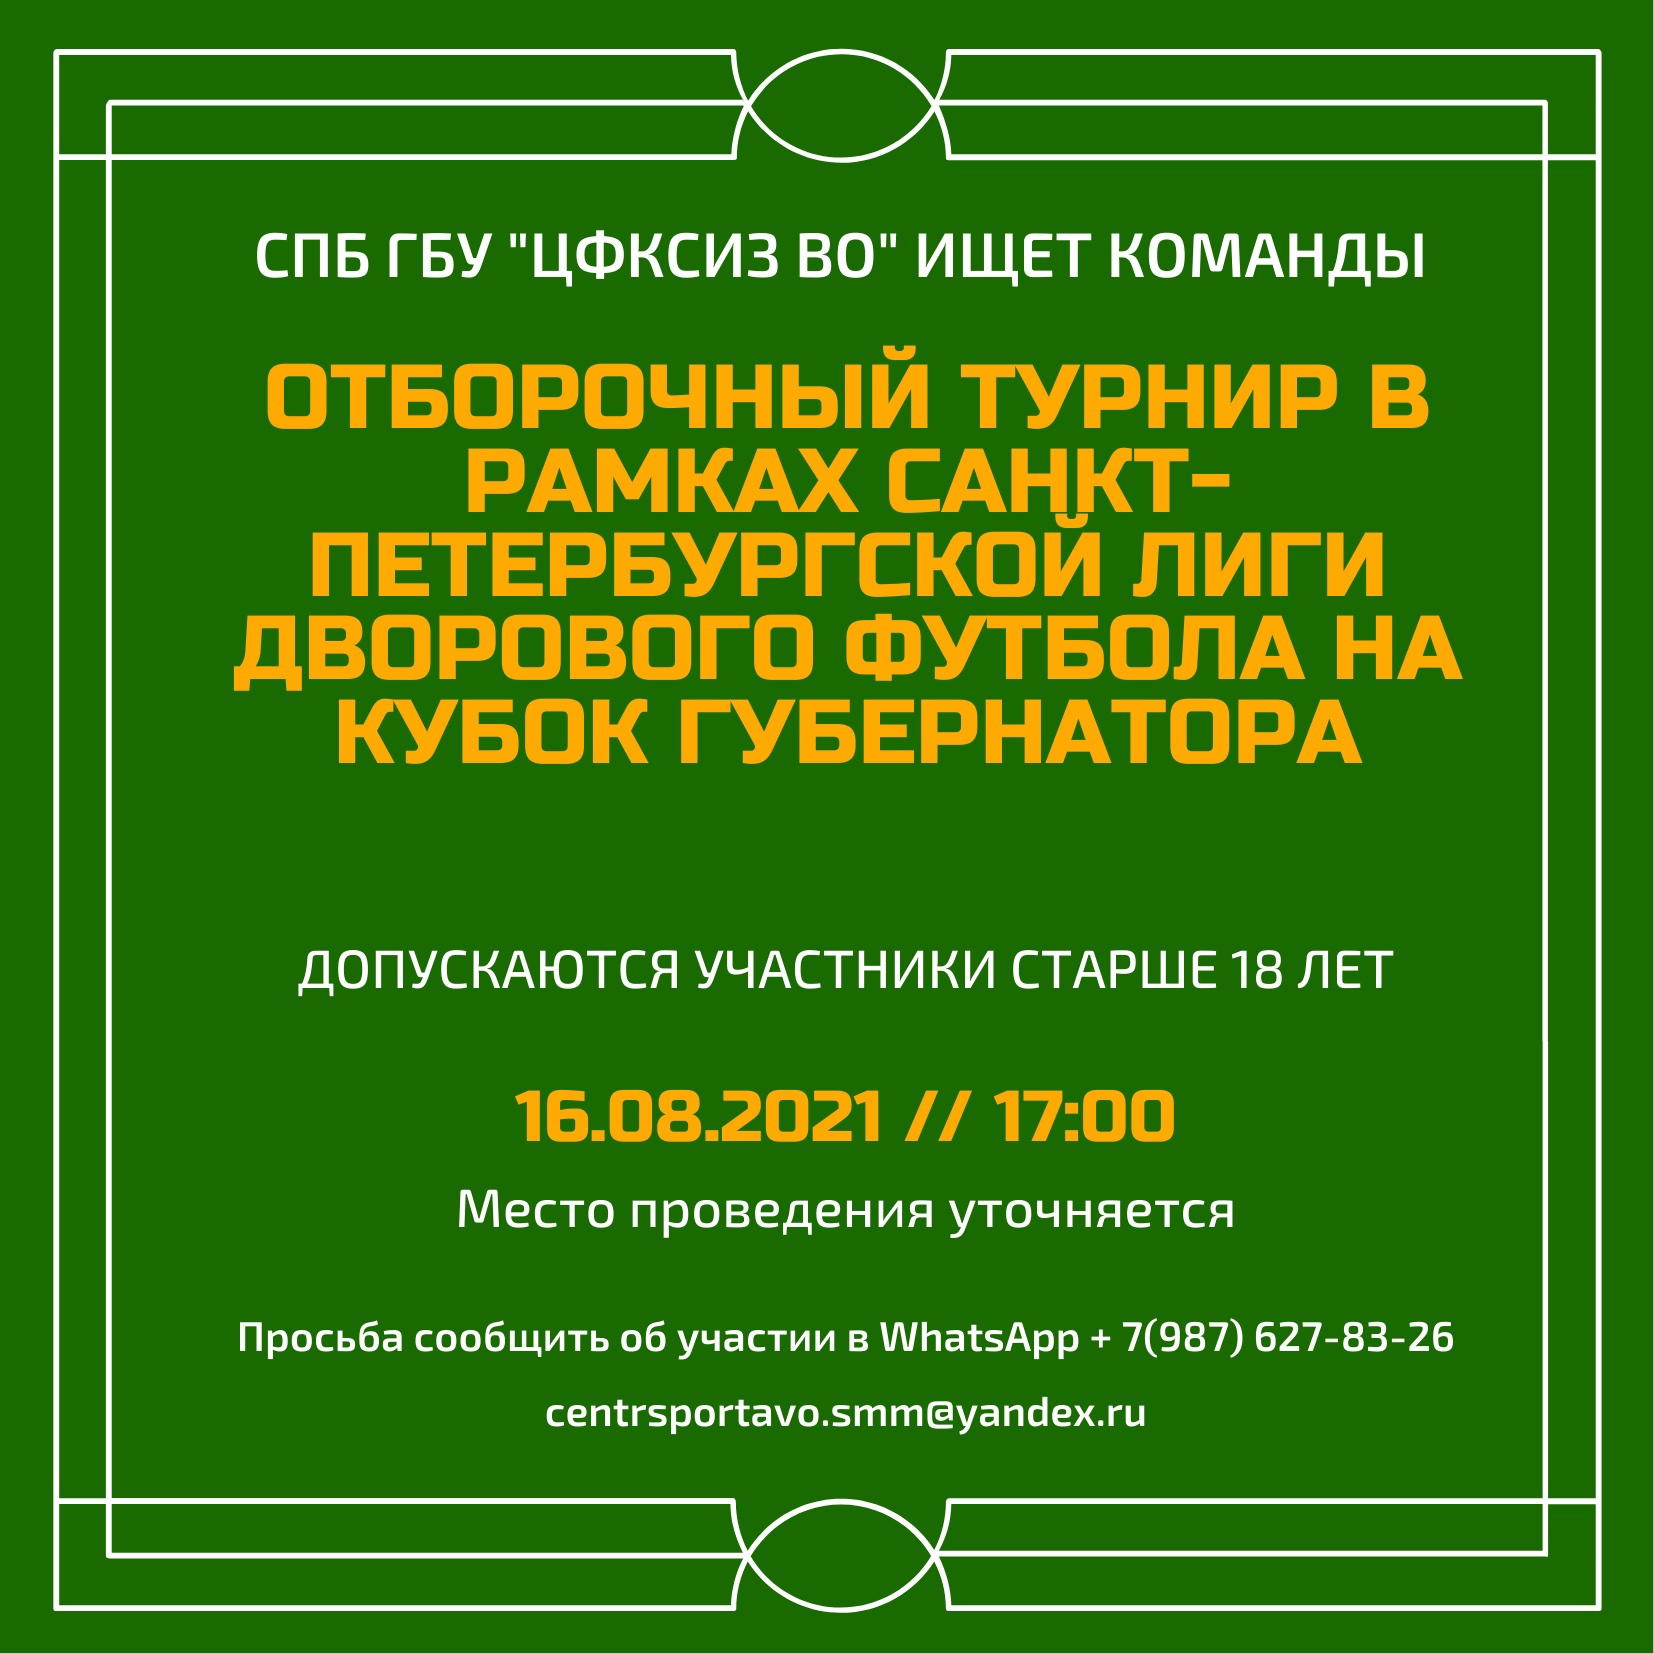 отборочный турнир в рамках Санкт-Петербургской спортивной лиги дворового футбола на кубок губернатора